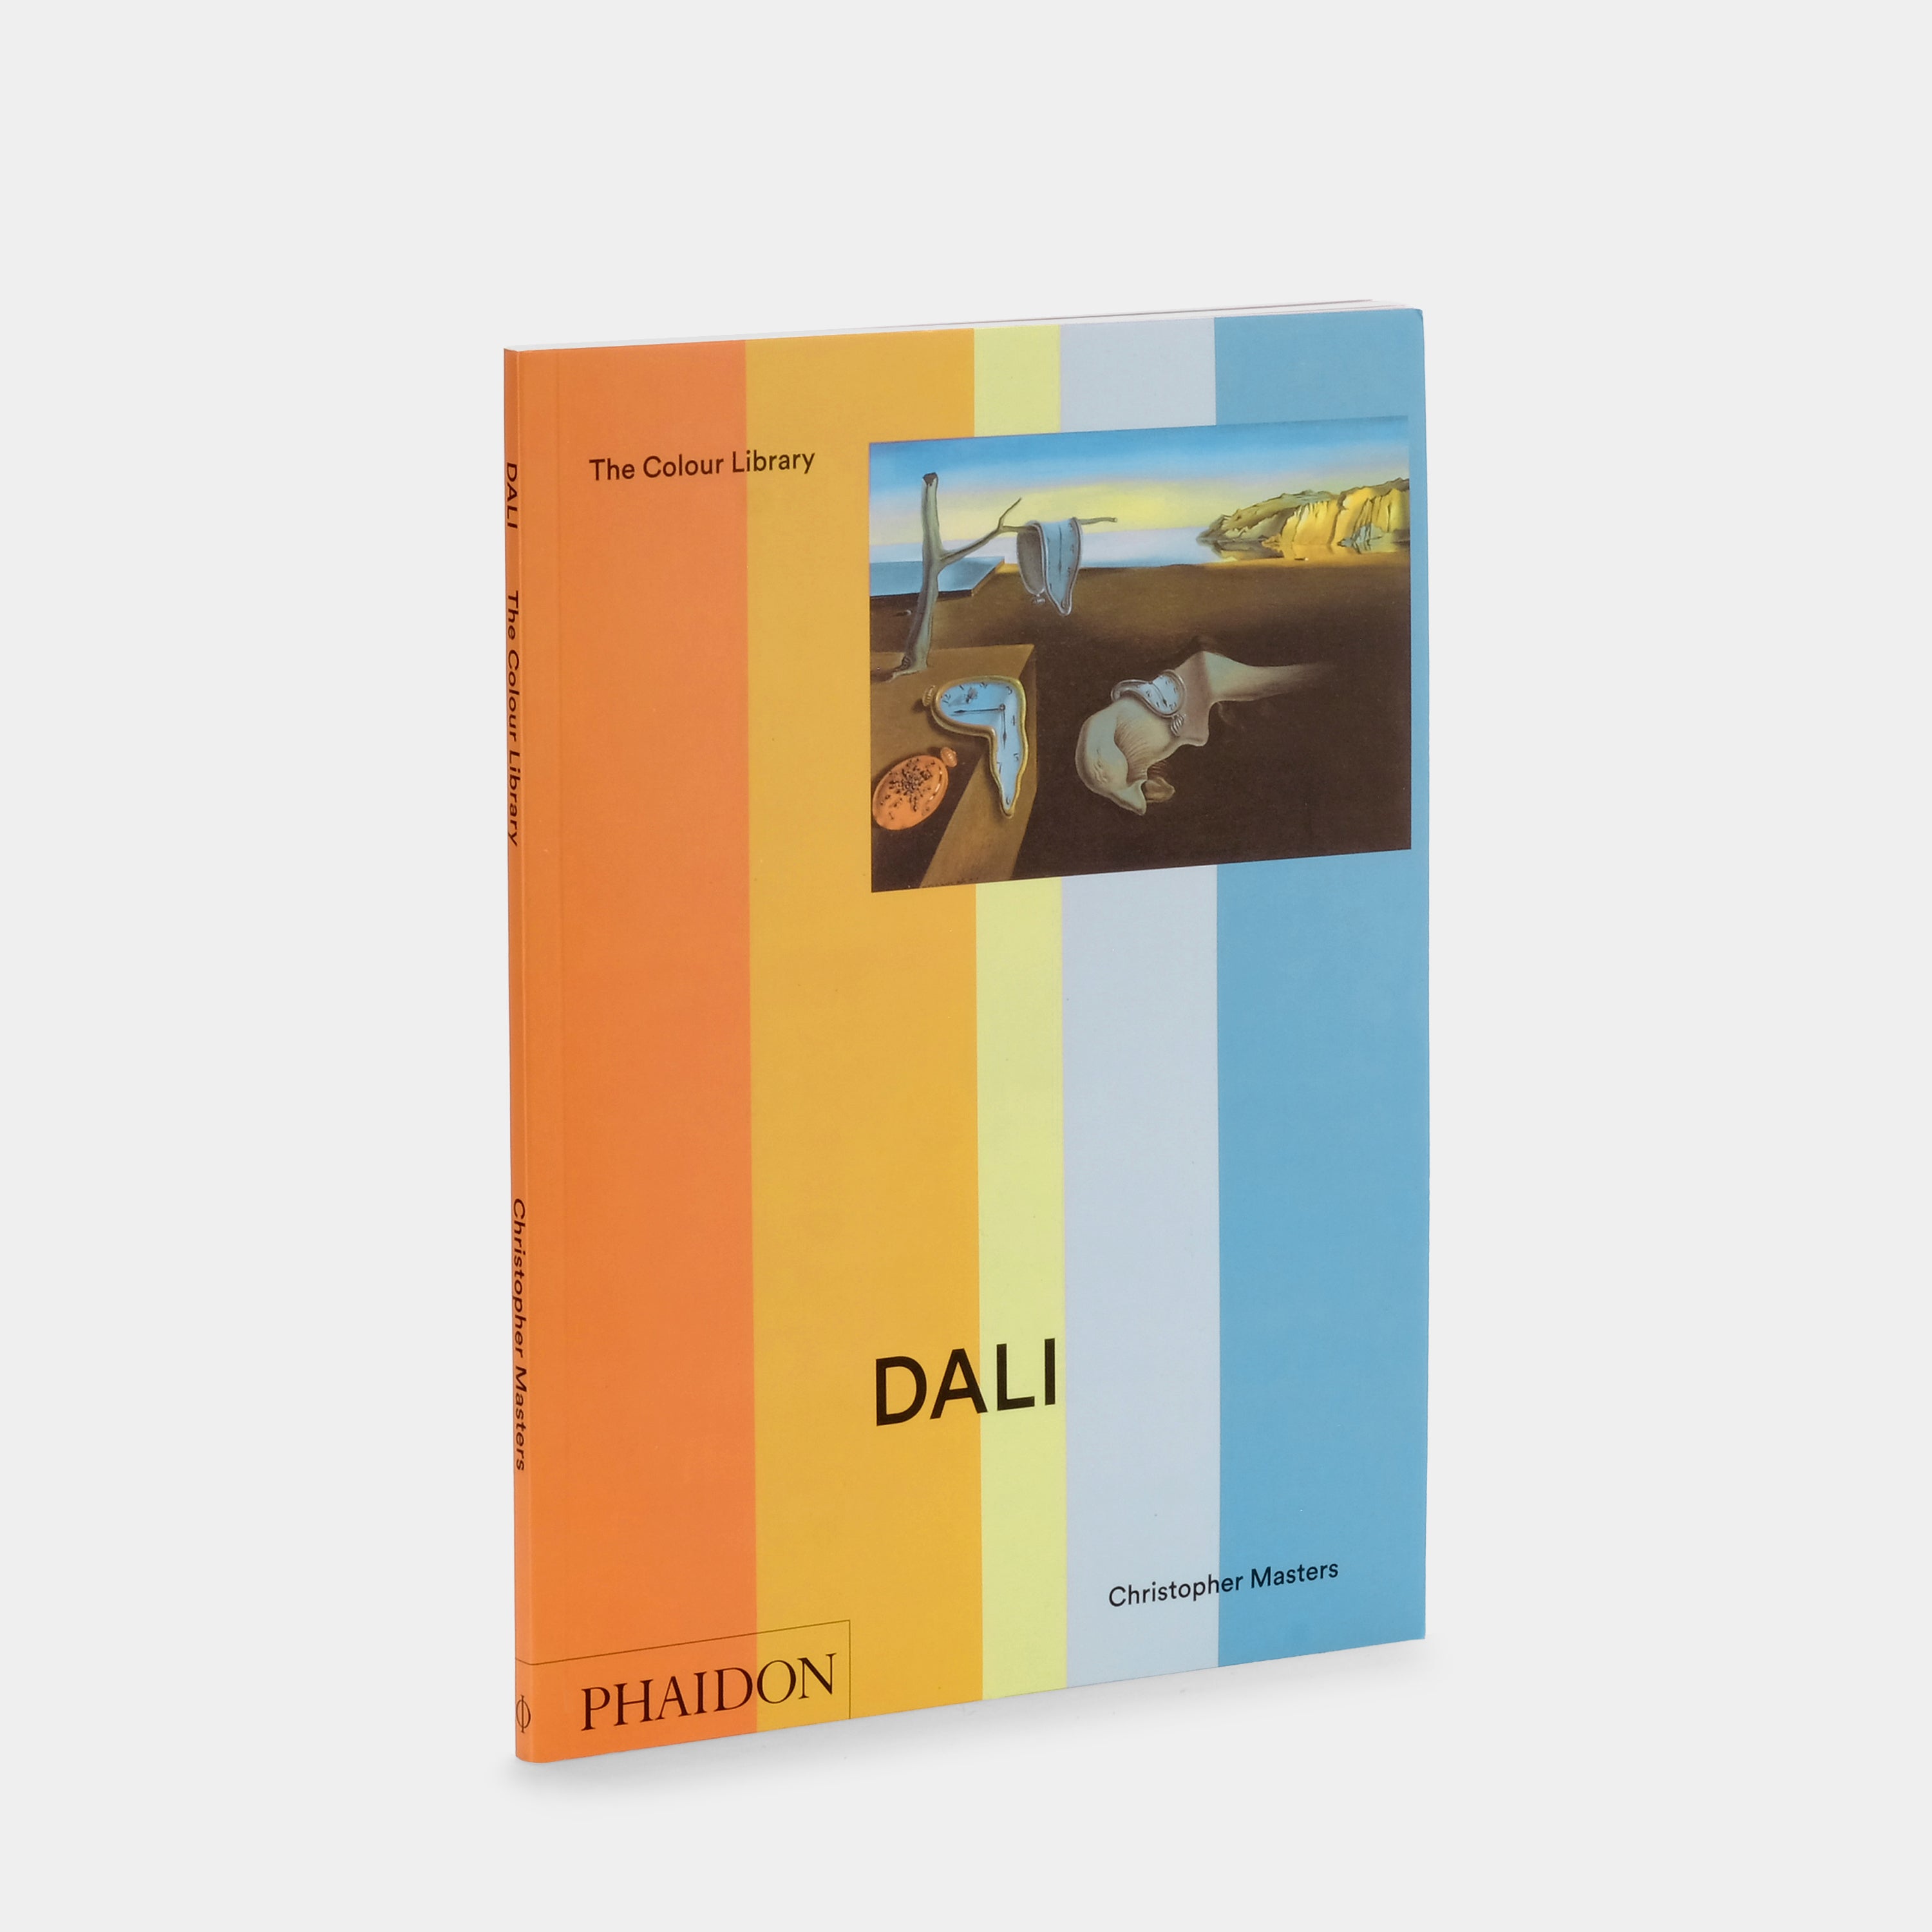 Dalí: The Colour Library Phaidon Book